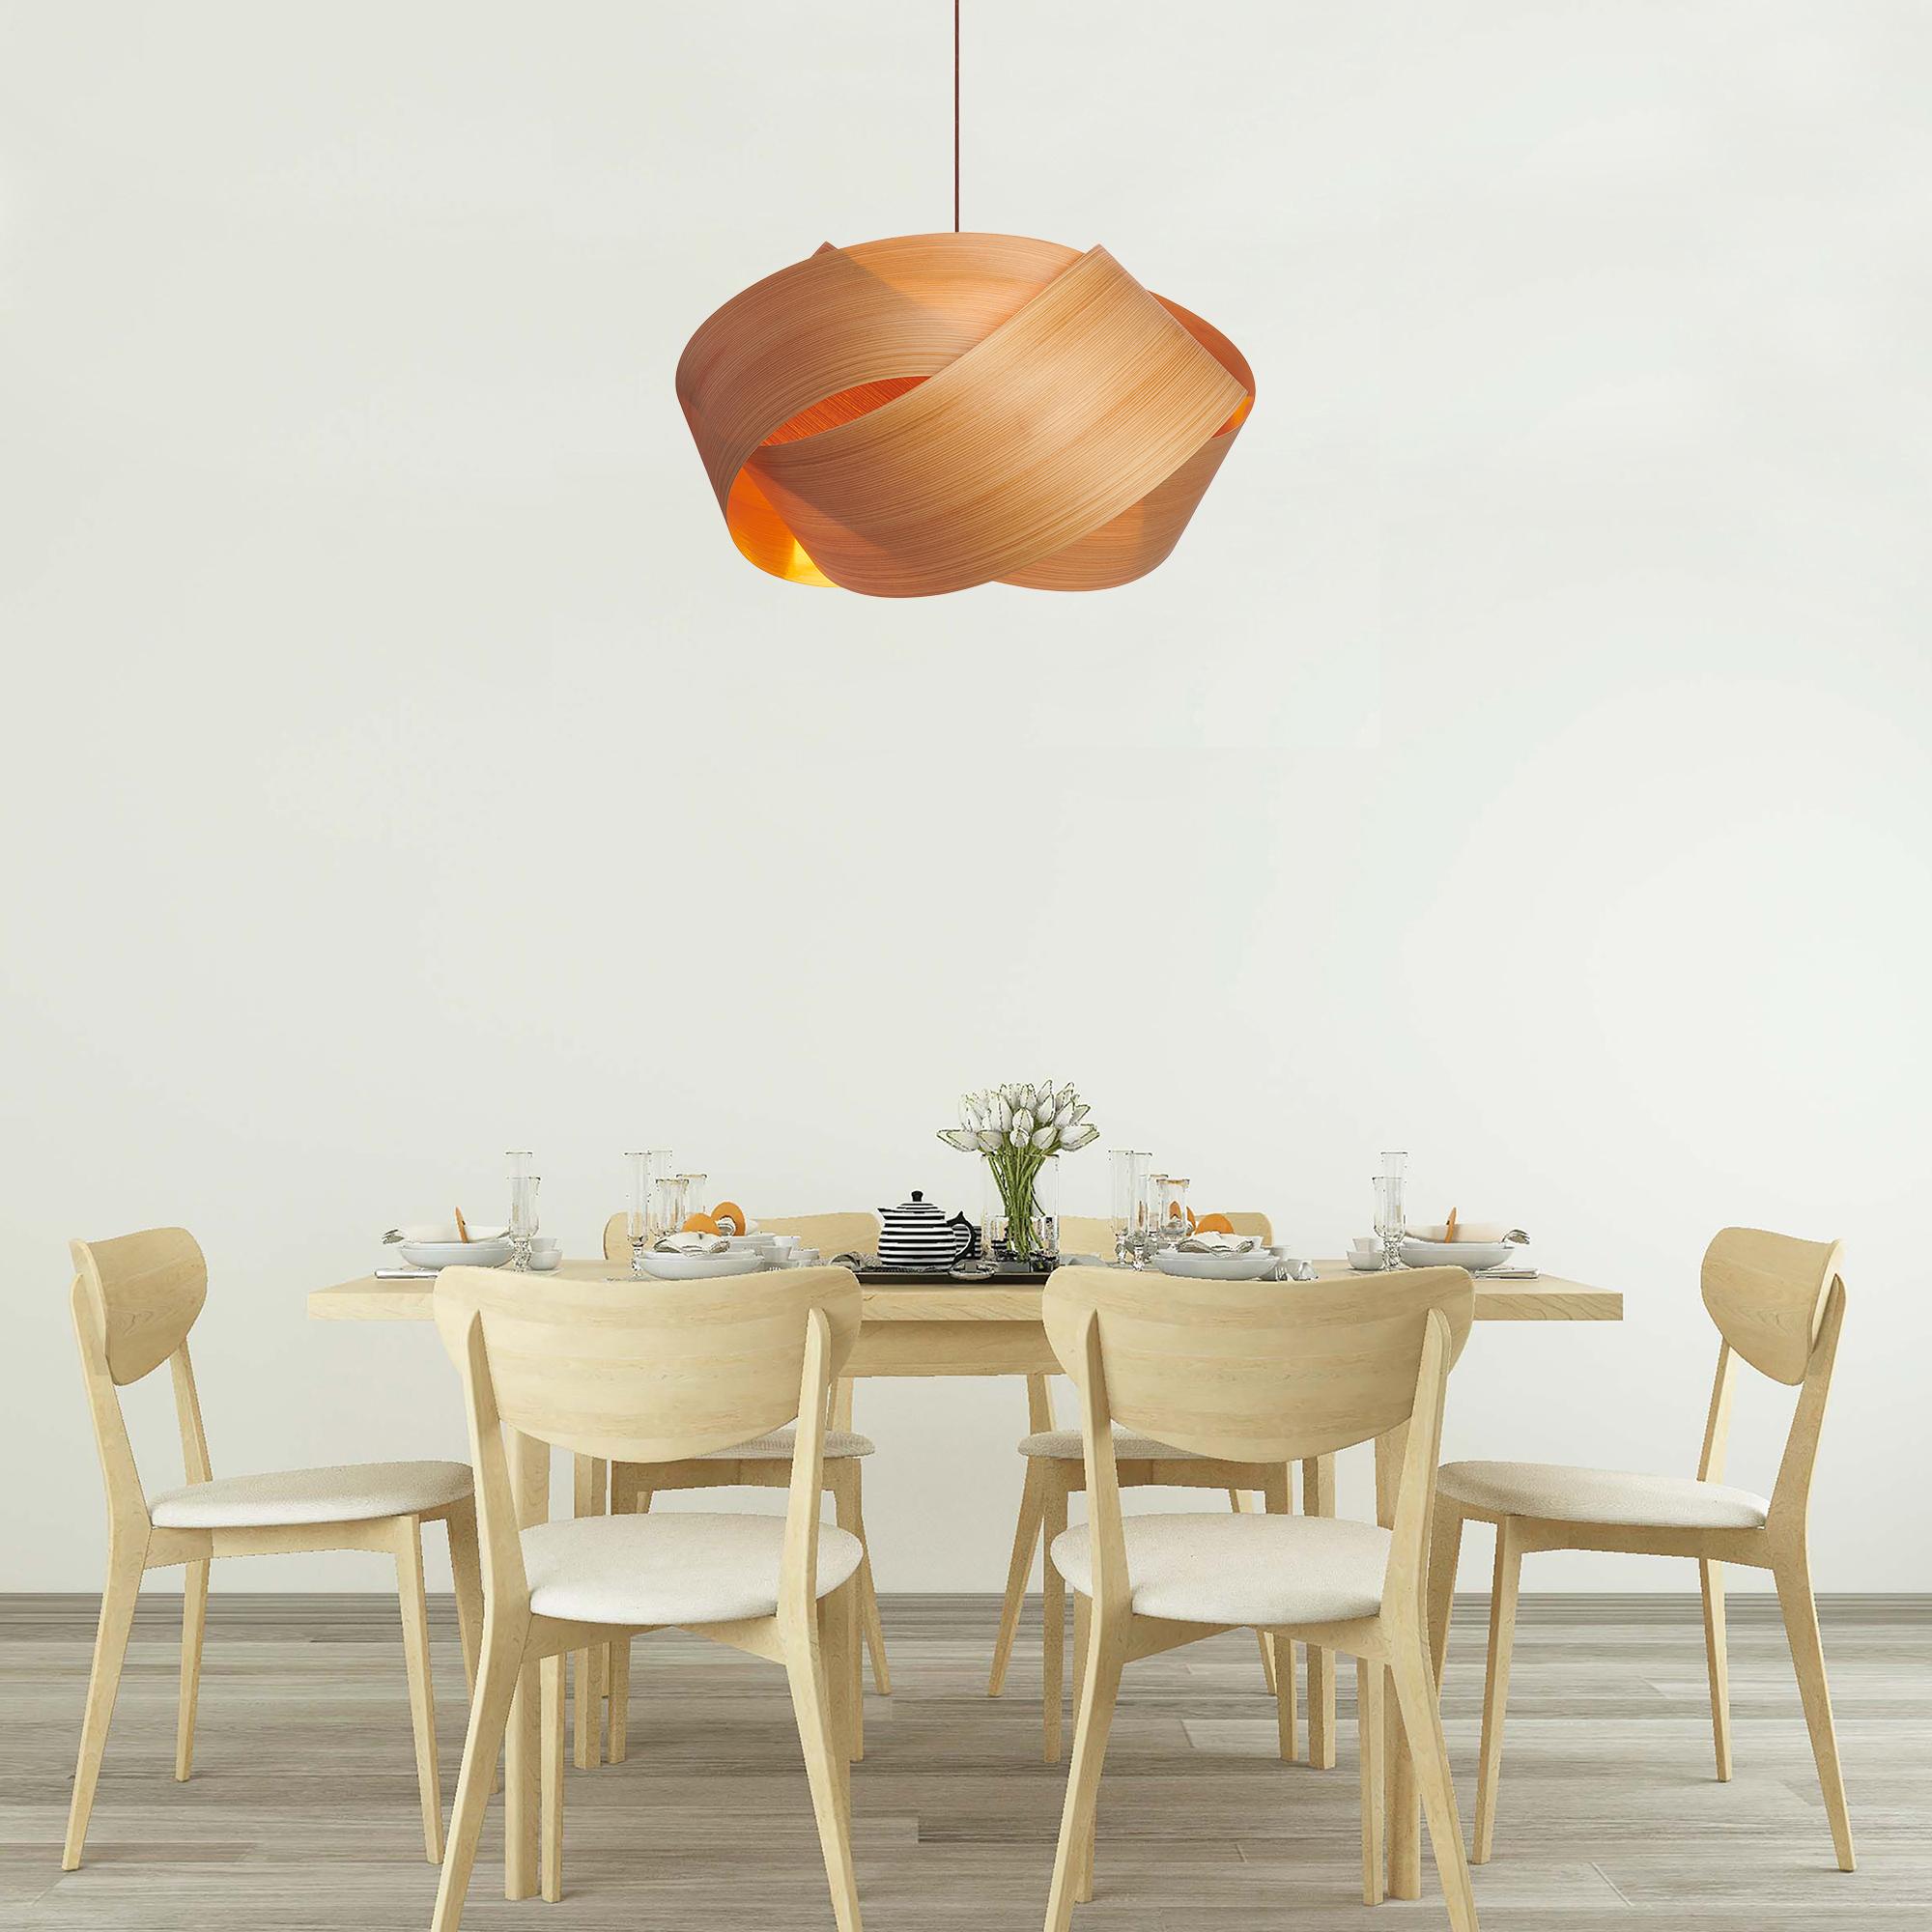 La lampe suspendue Serene est un luminaire contemporain, Mid-Century Modern, au design scandinave et à la composition moderne organique. Ce design minimaliste de suspension luxueuse en placage de bois est le moyen idéal d'ajouter une touche de